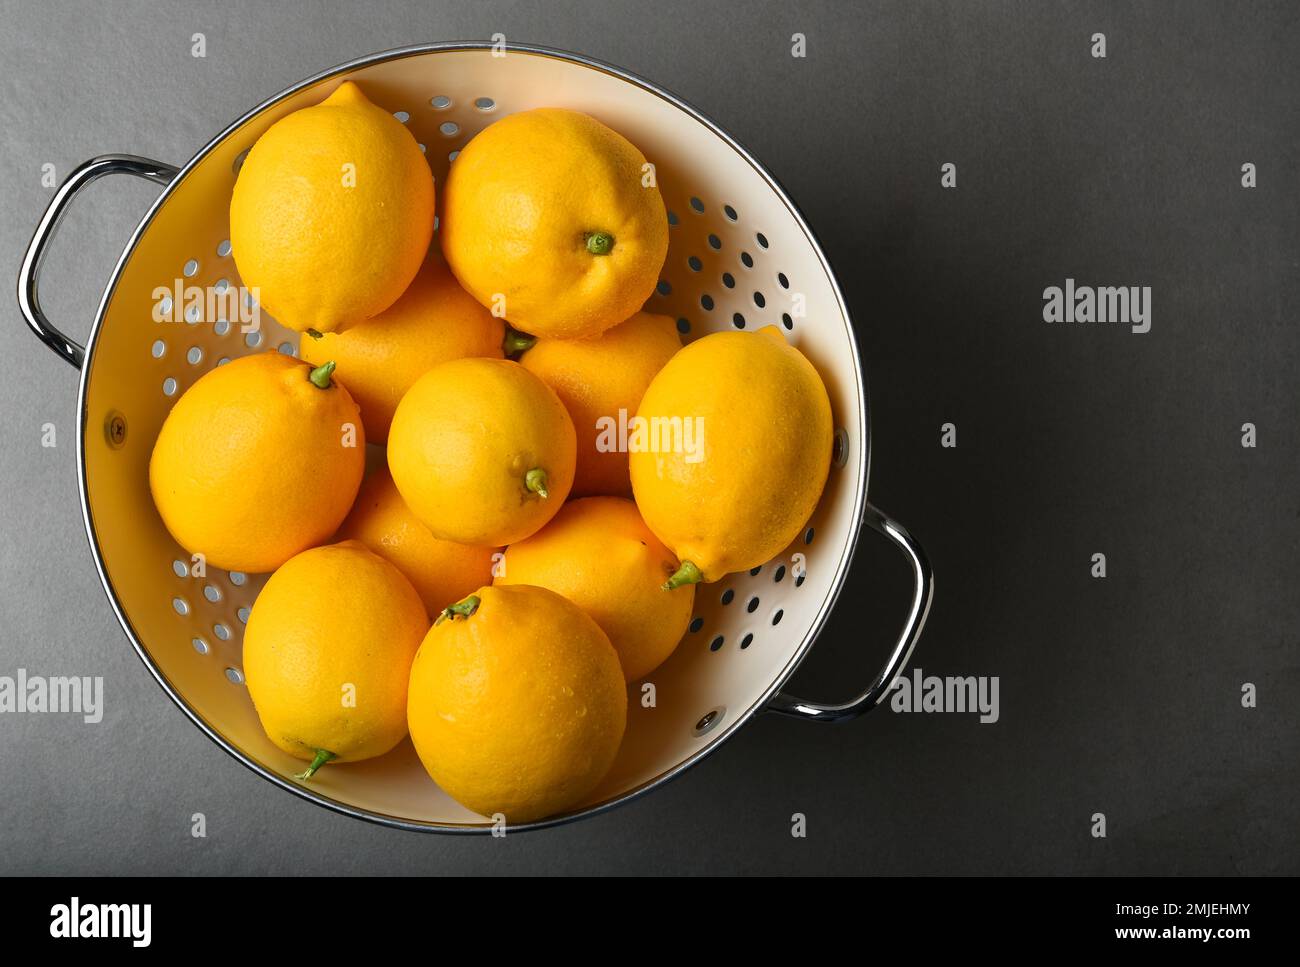 Frisch gepflückte Zitronen in einem weißen Sieb auf einer grauen Schieferfliese mit starkem Seitenlicht. Aufnahme aus hohem Winkel mit Kopierbereich auf der rechten Seite. Stockfoto